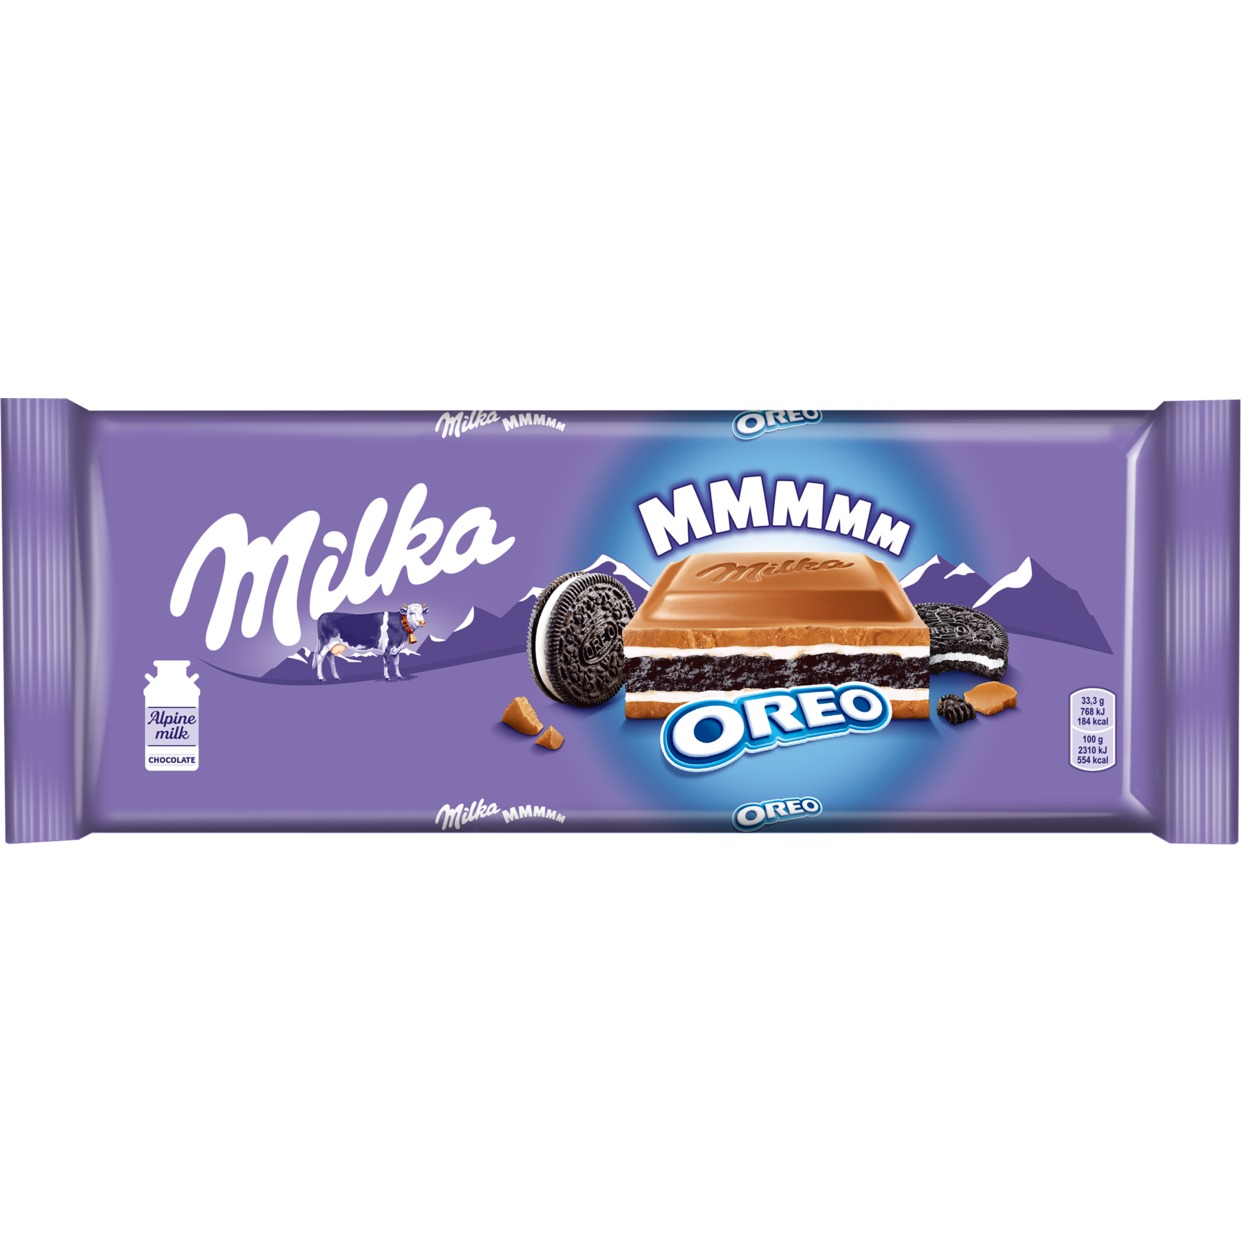 Шоколад Milka Oreo, молочный, 300 г по акции в Пятерочке